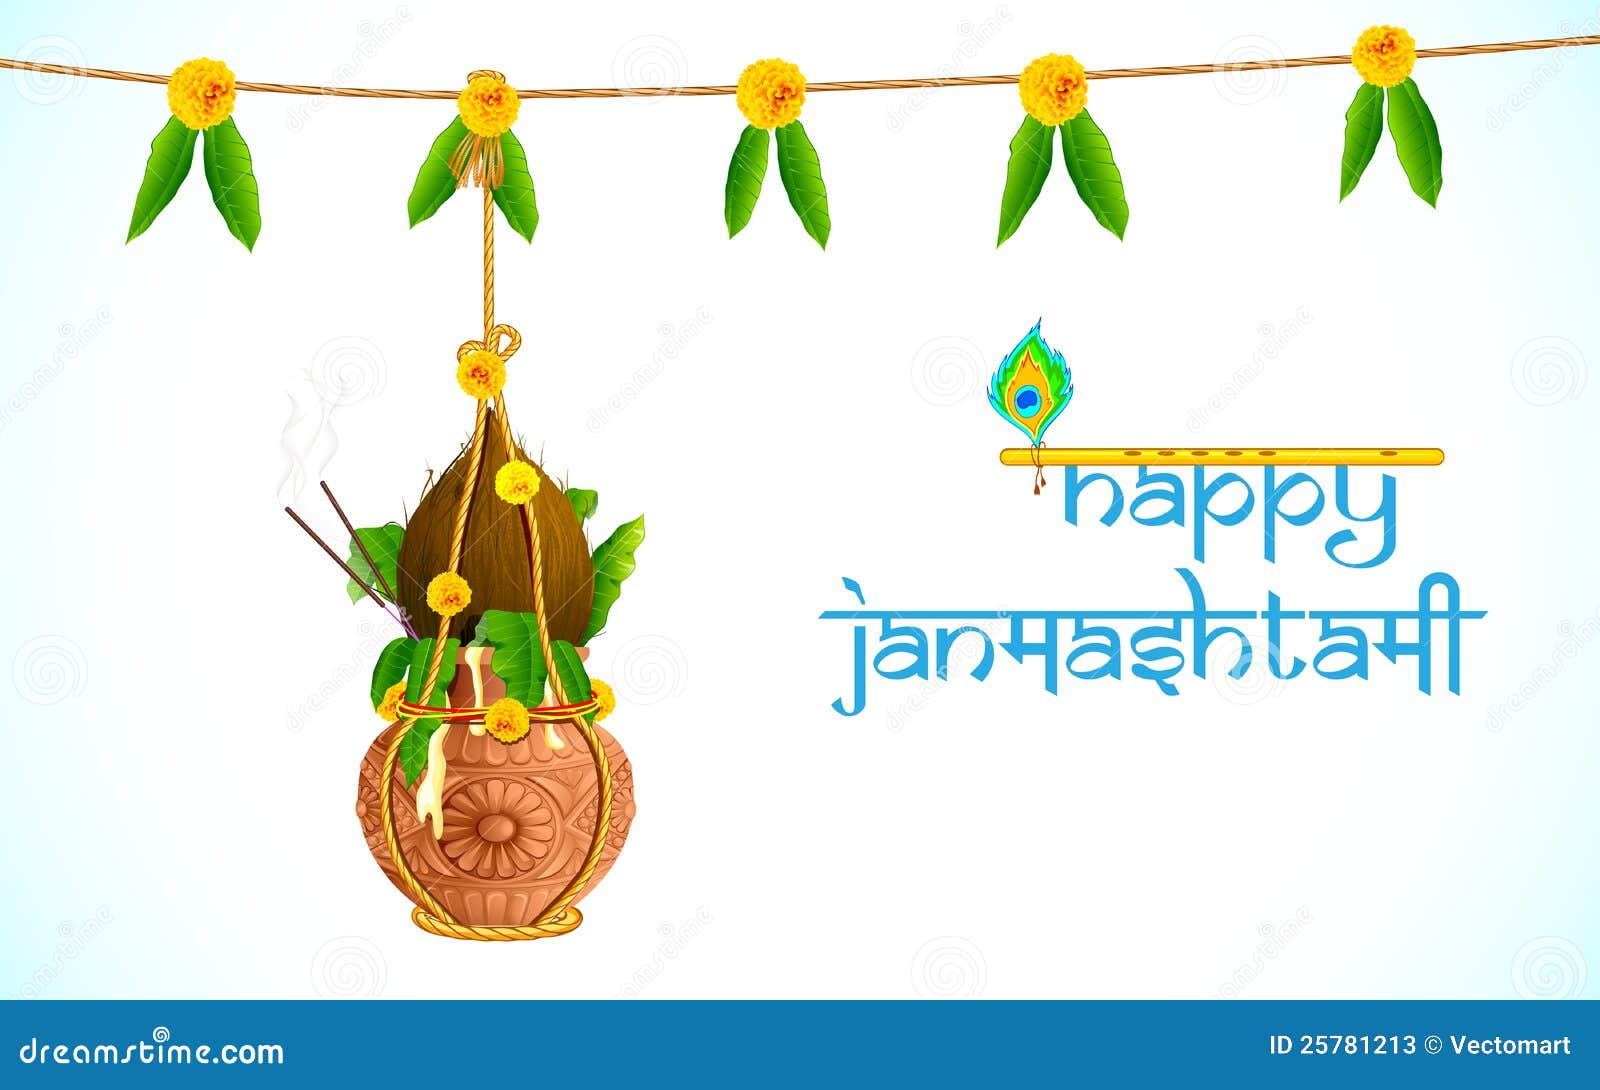 Dahi Handi on Janmashtami stock vector. Illustration of editable - 25781213